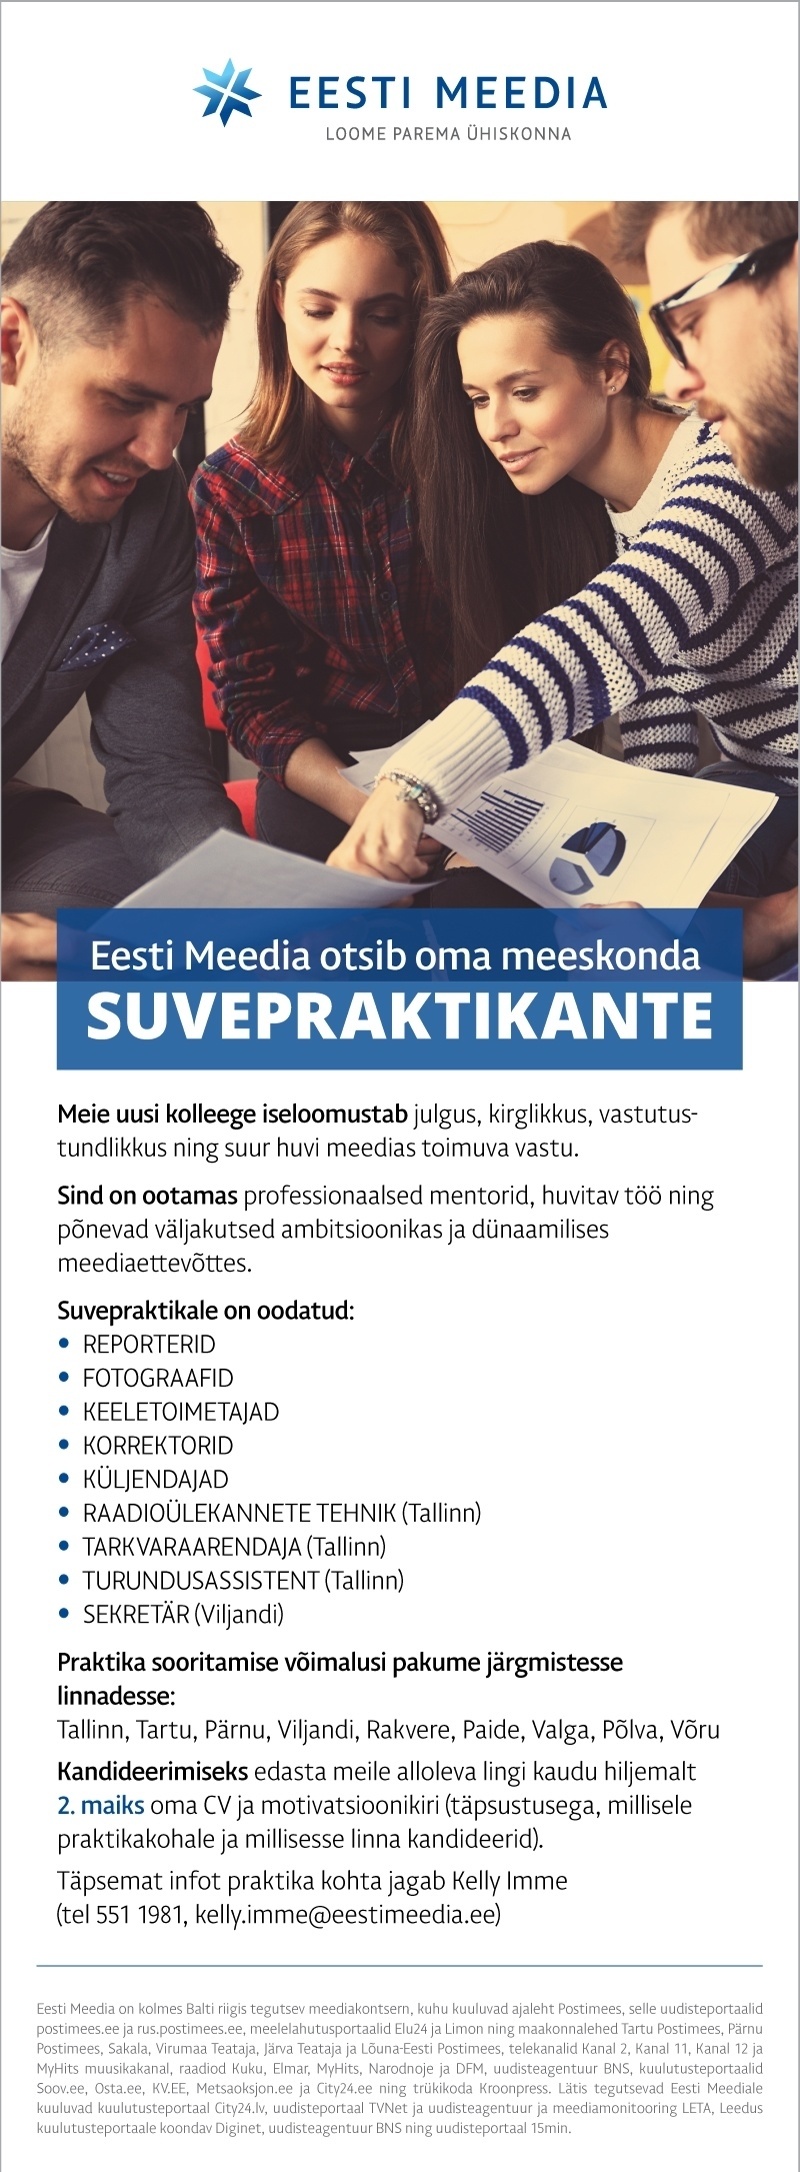 Eesti Meedia Eesti Meedia suvepraktikandid